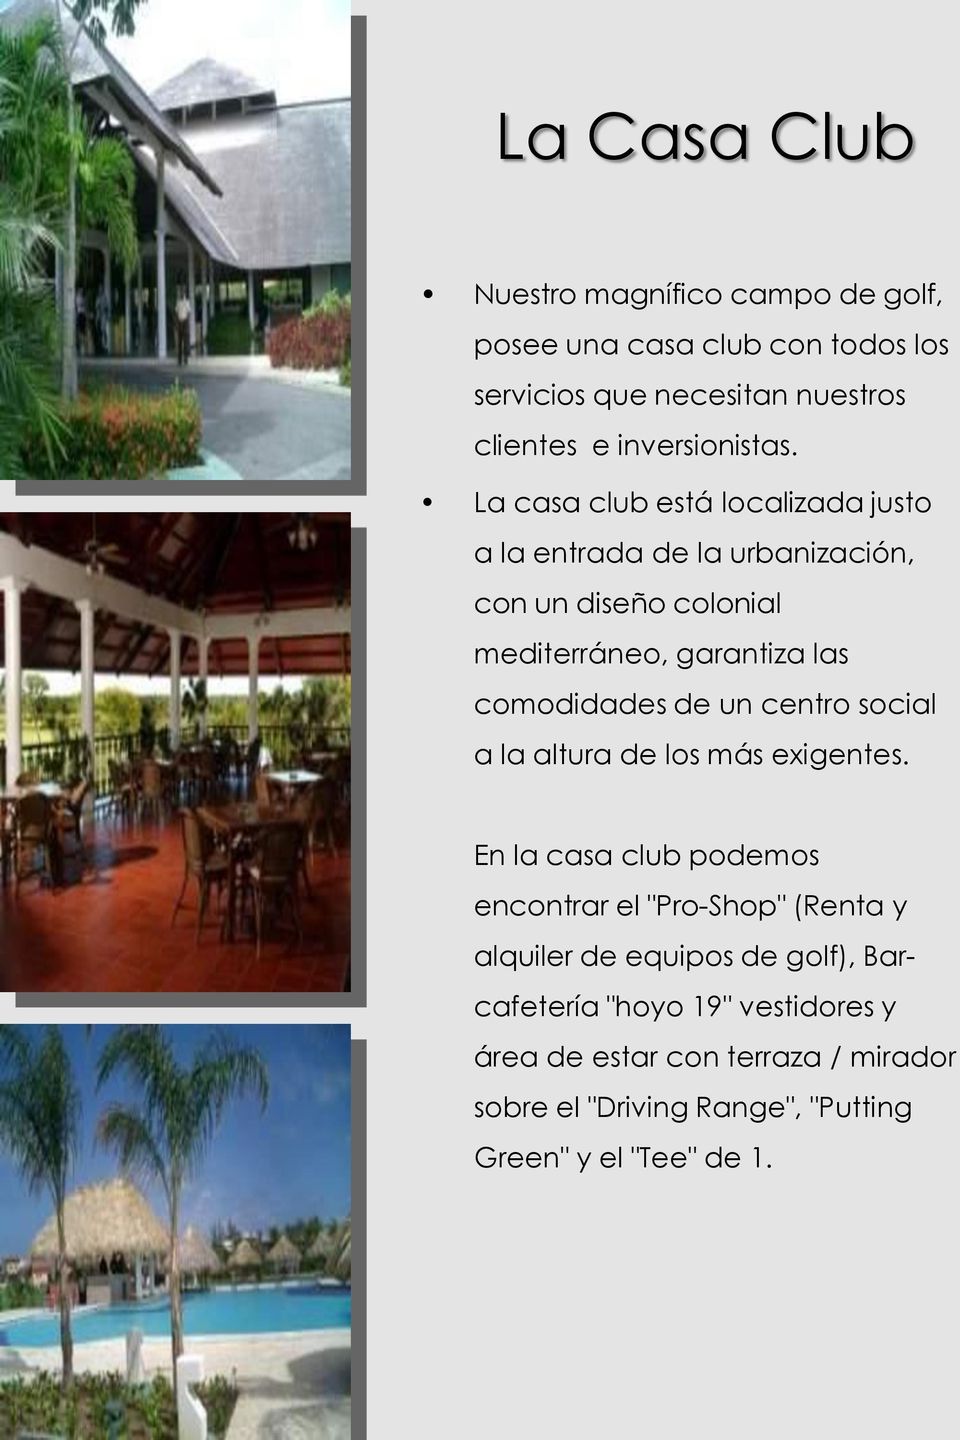 La casa club está localizada justo a la entrada de la urbanización, con un diseño colonial mediterráneo, garantiza las comodidades de